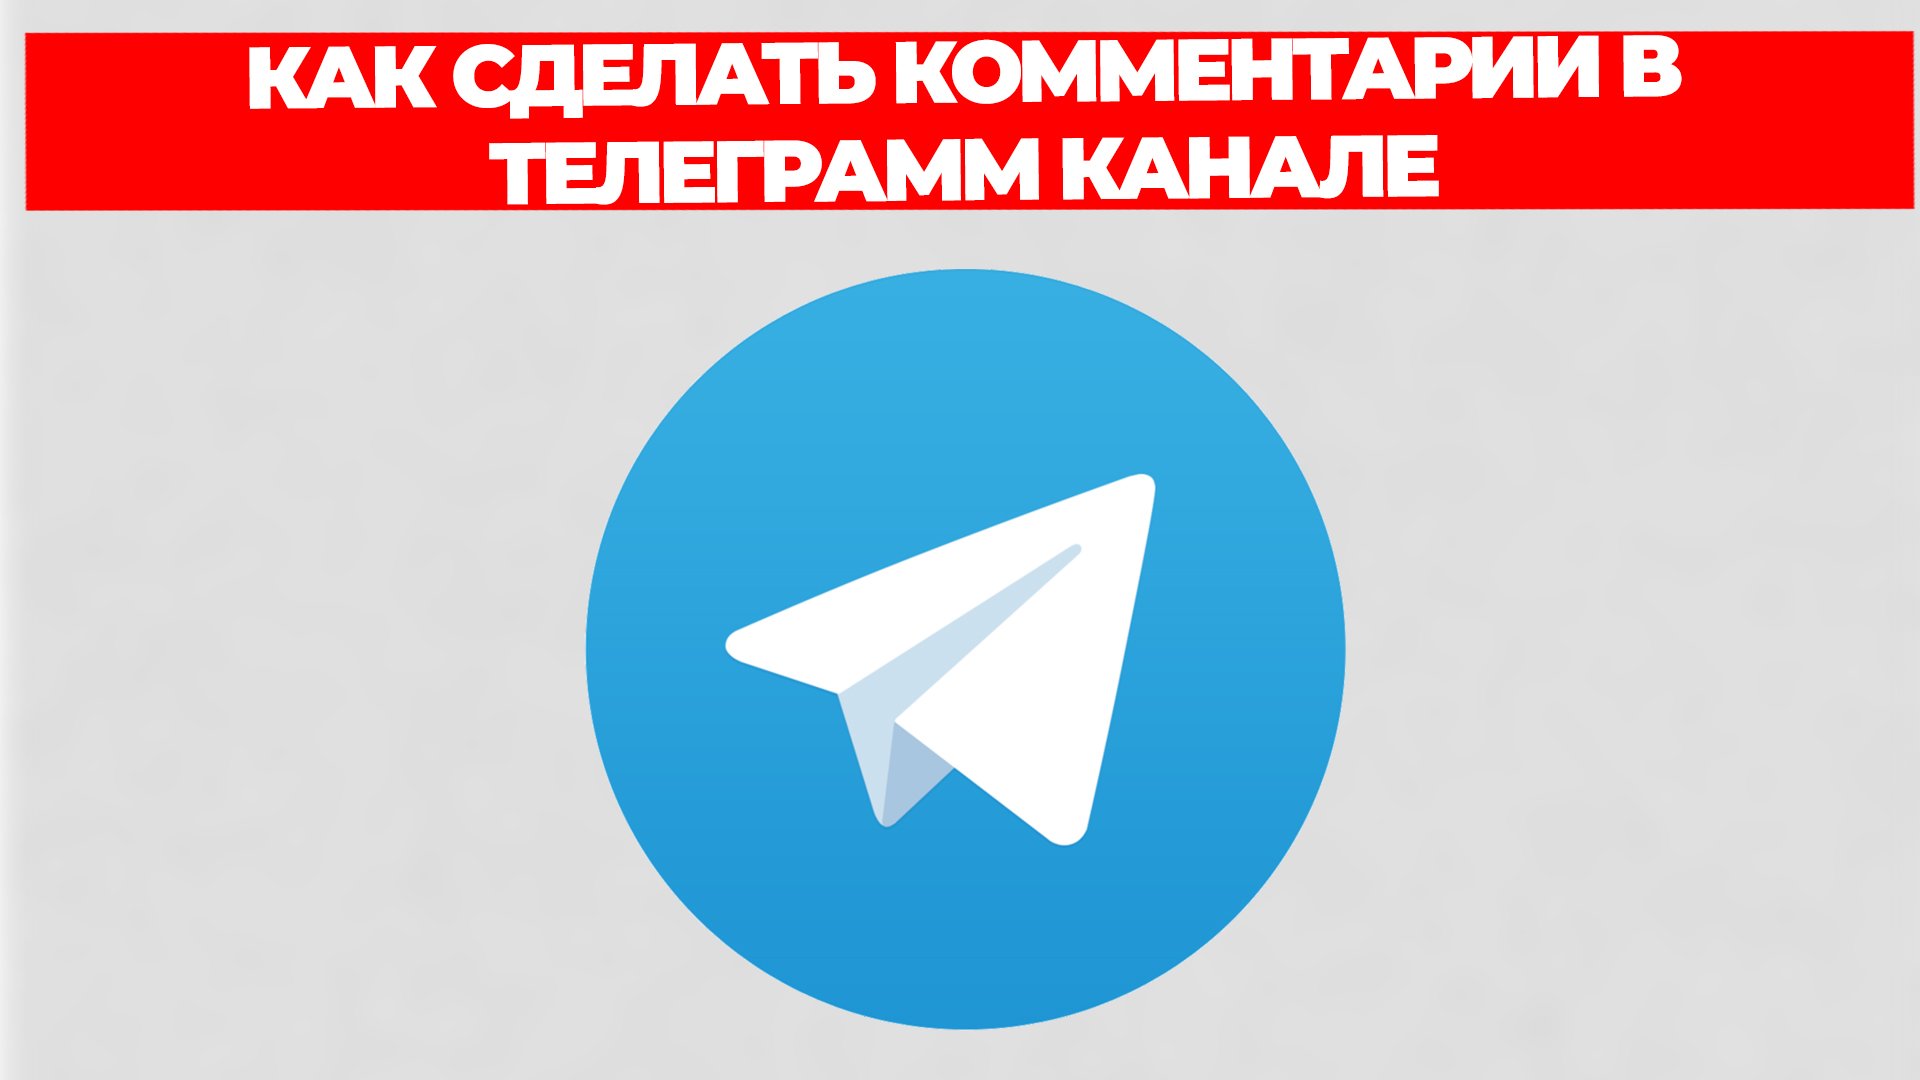 Установить телеграмм на андроид на русском языке бесплатно пошагово видео как фото 90